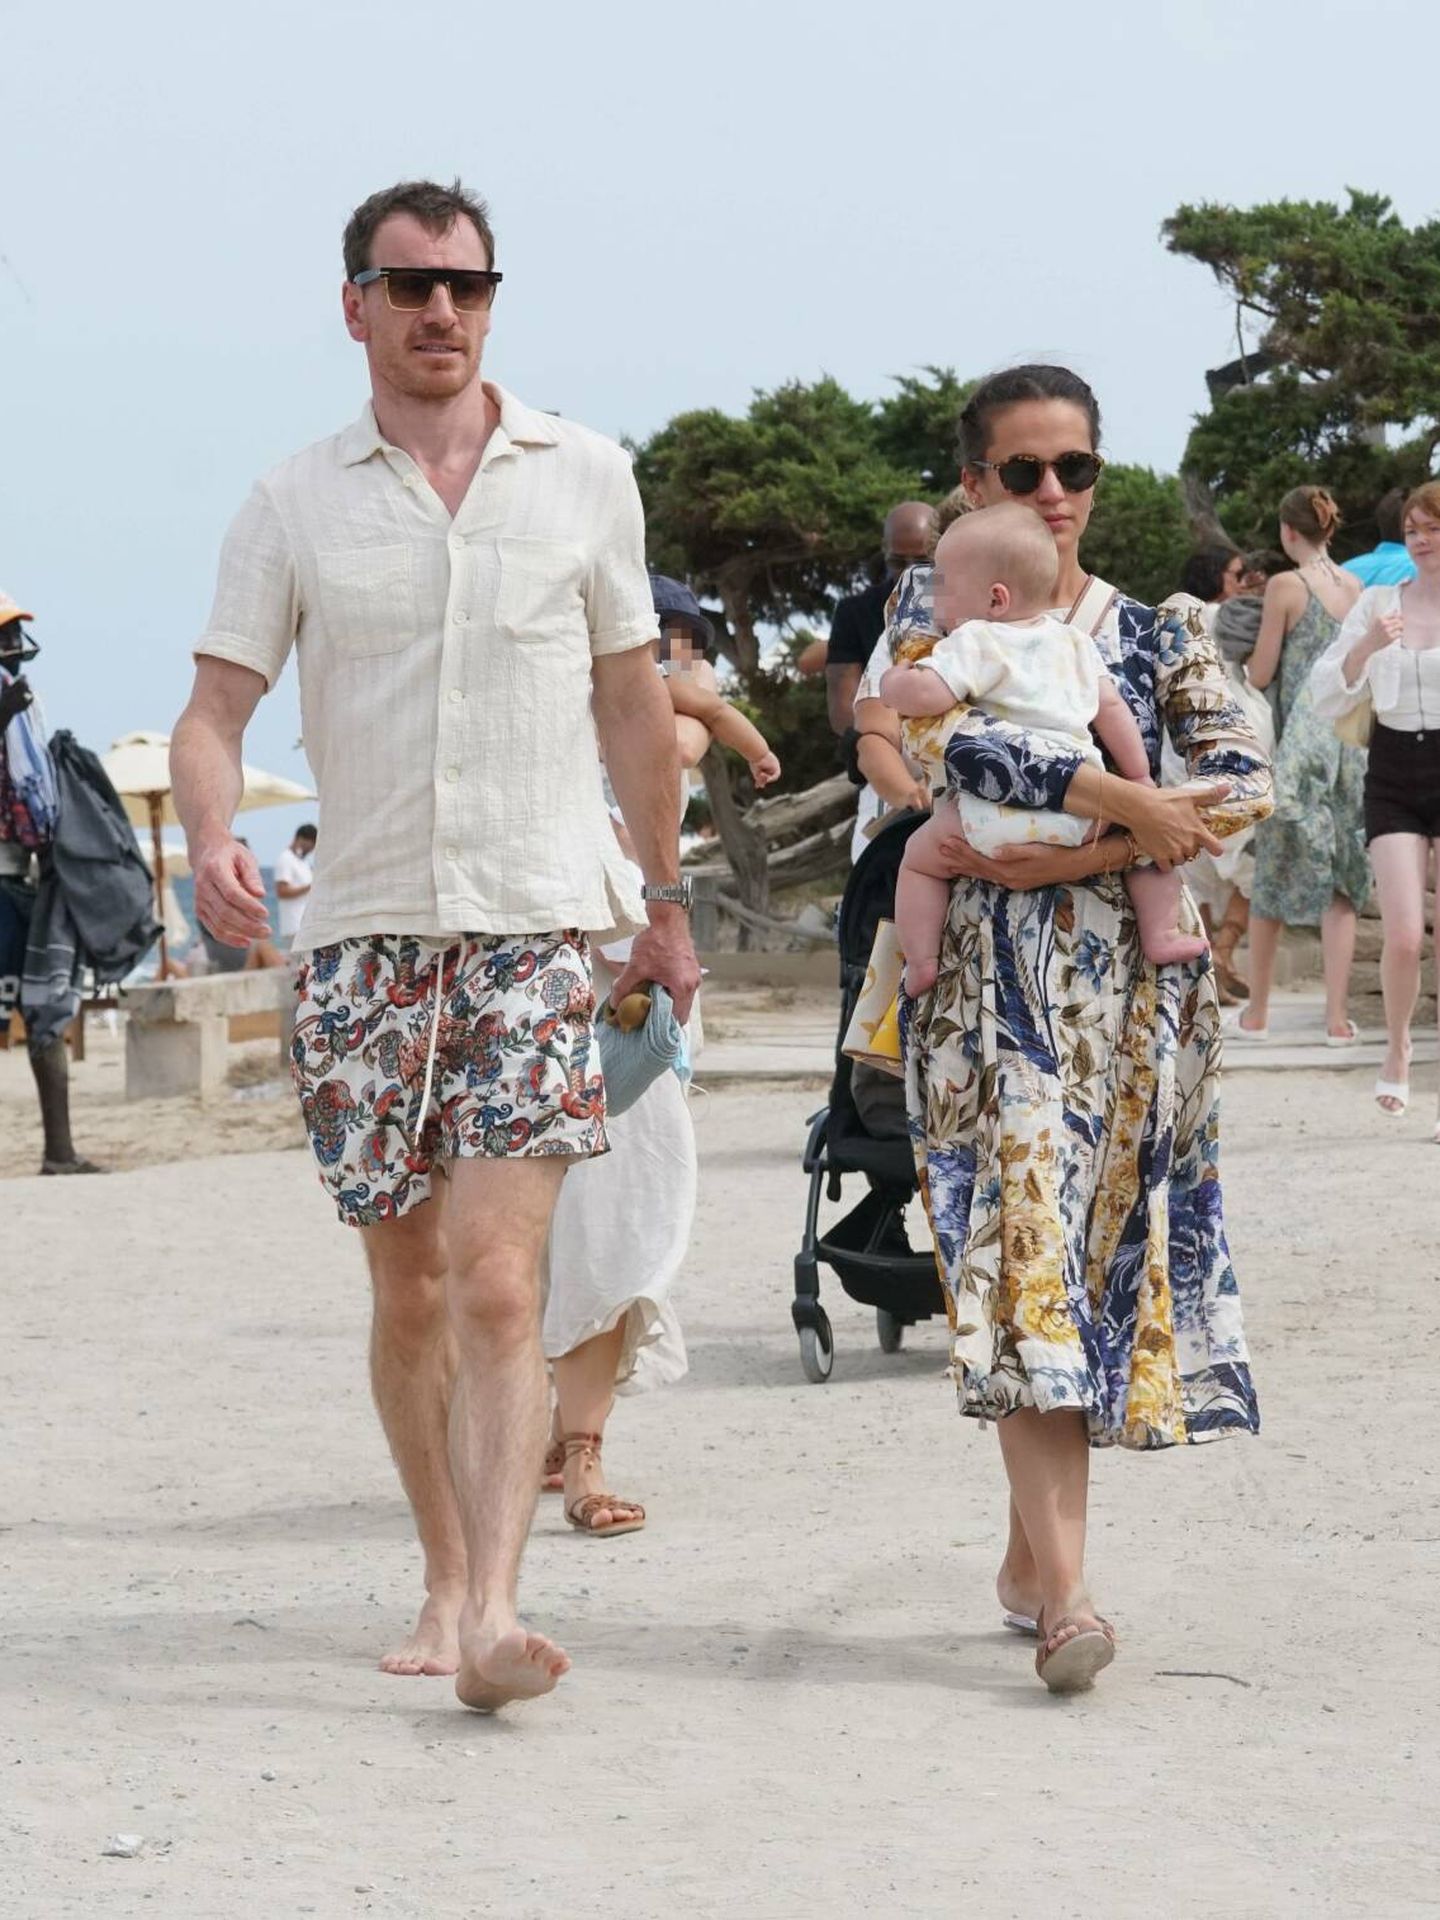 Estilosos y en familia, Alicia Vikander y Michael Fassbender en Ibiza con su bebé. (Gtres)